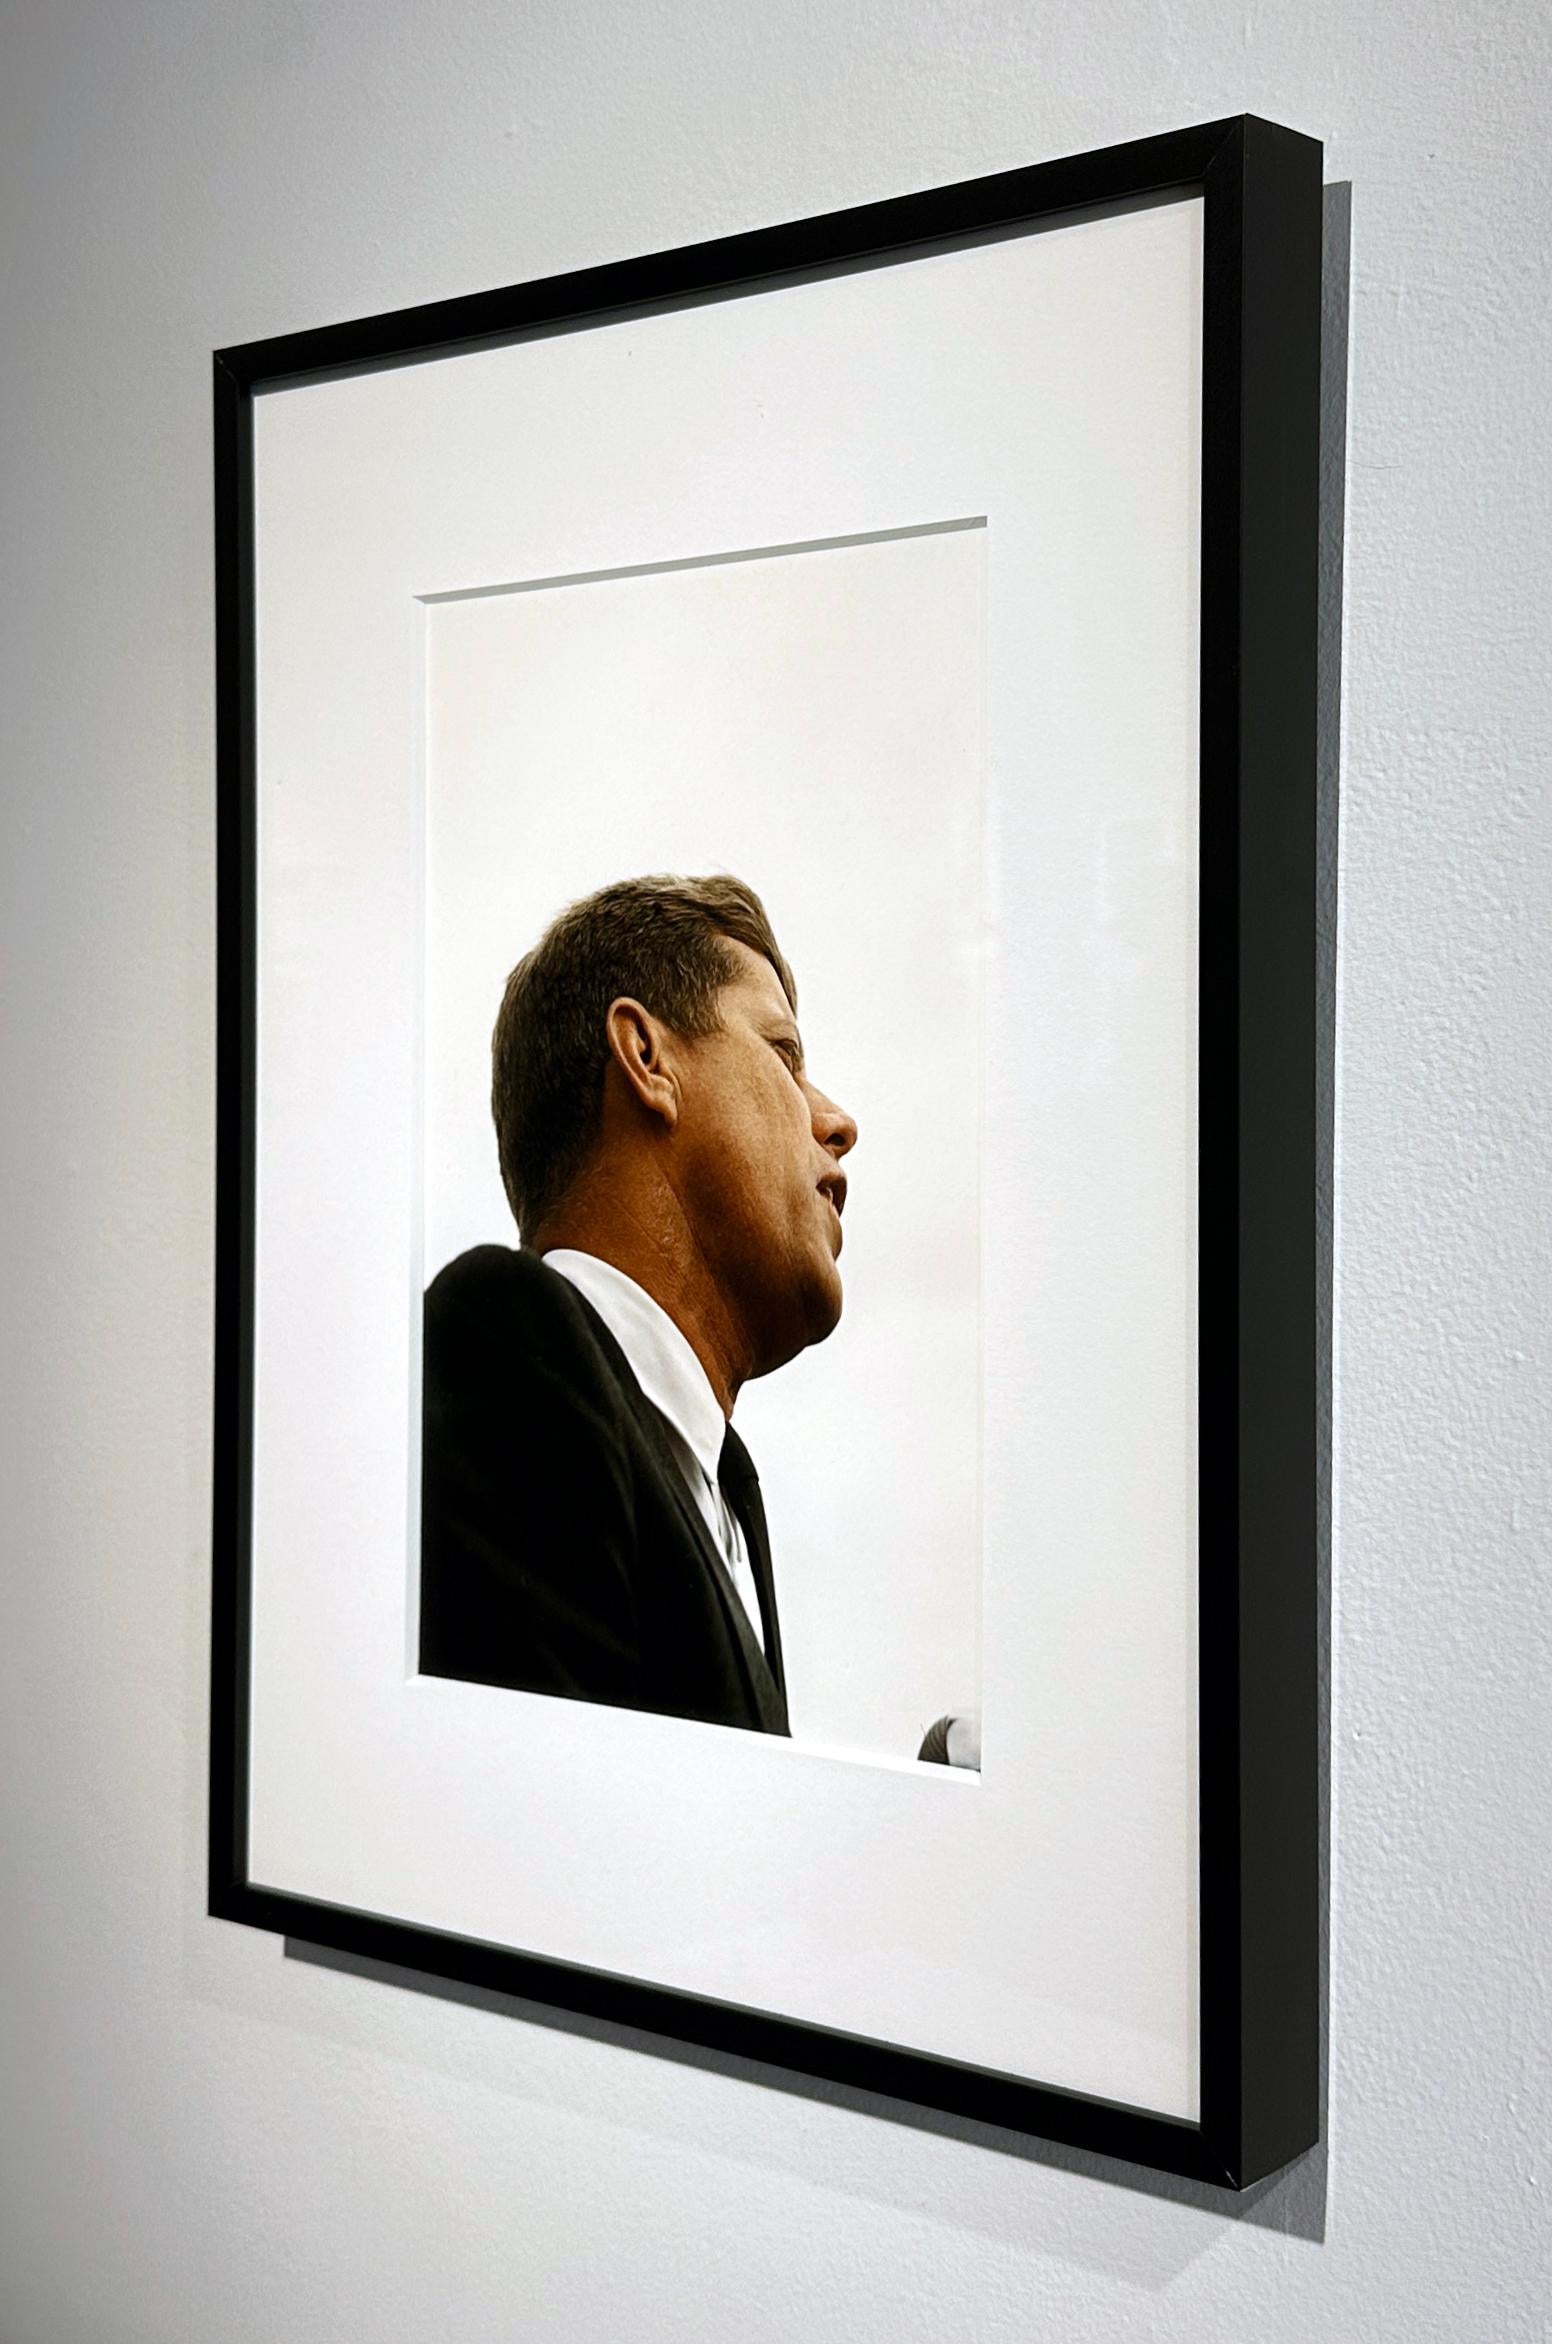 Le photographe Art Shay a pu s'approcher au plus près de John F. Kennedy dans ce portrait intime.  Le fait qu'il soit dépourvu de tout arrière-plan ajoute à la puissance de ce portrait.  Elle est encadrée dans un cadre métallique noir de 18 x 13,75